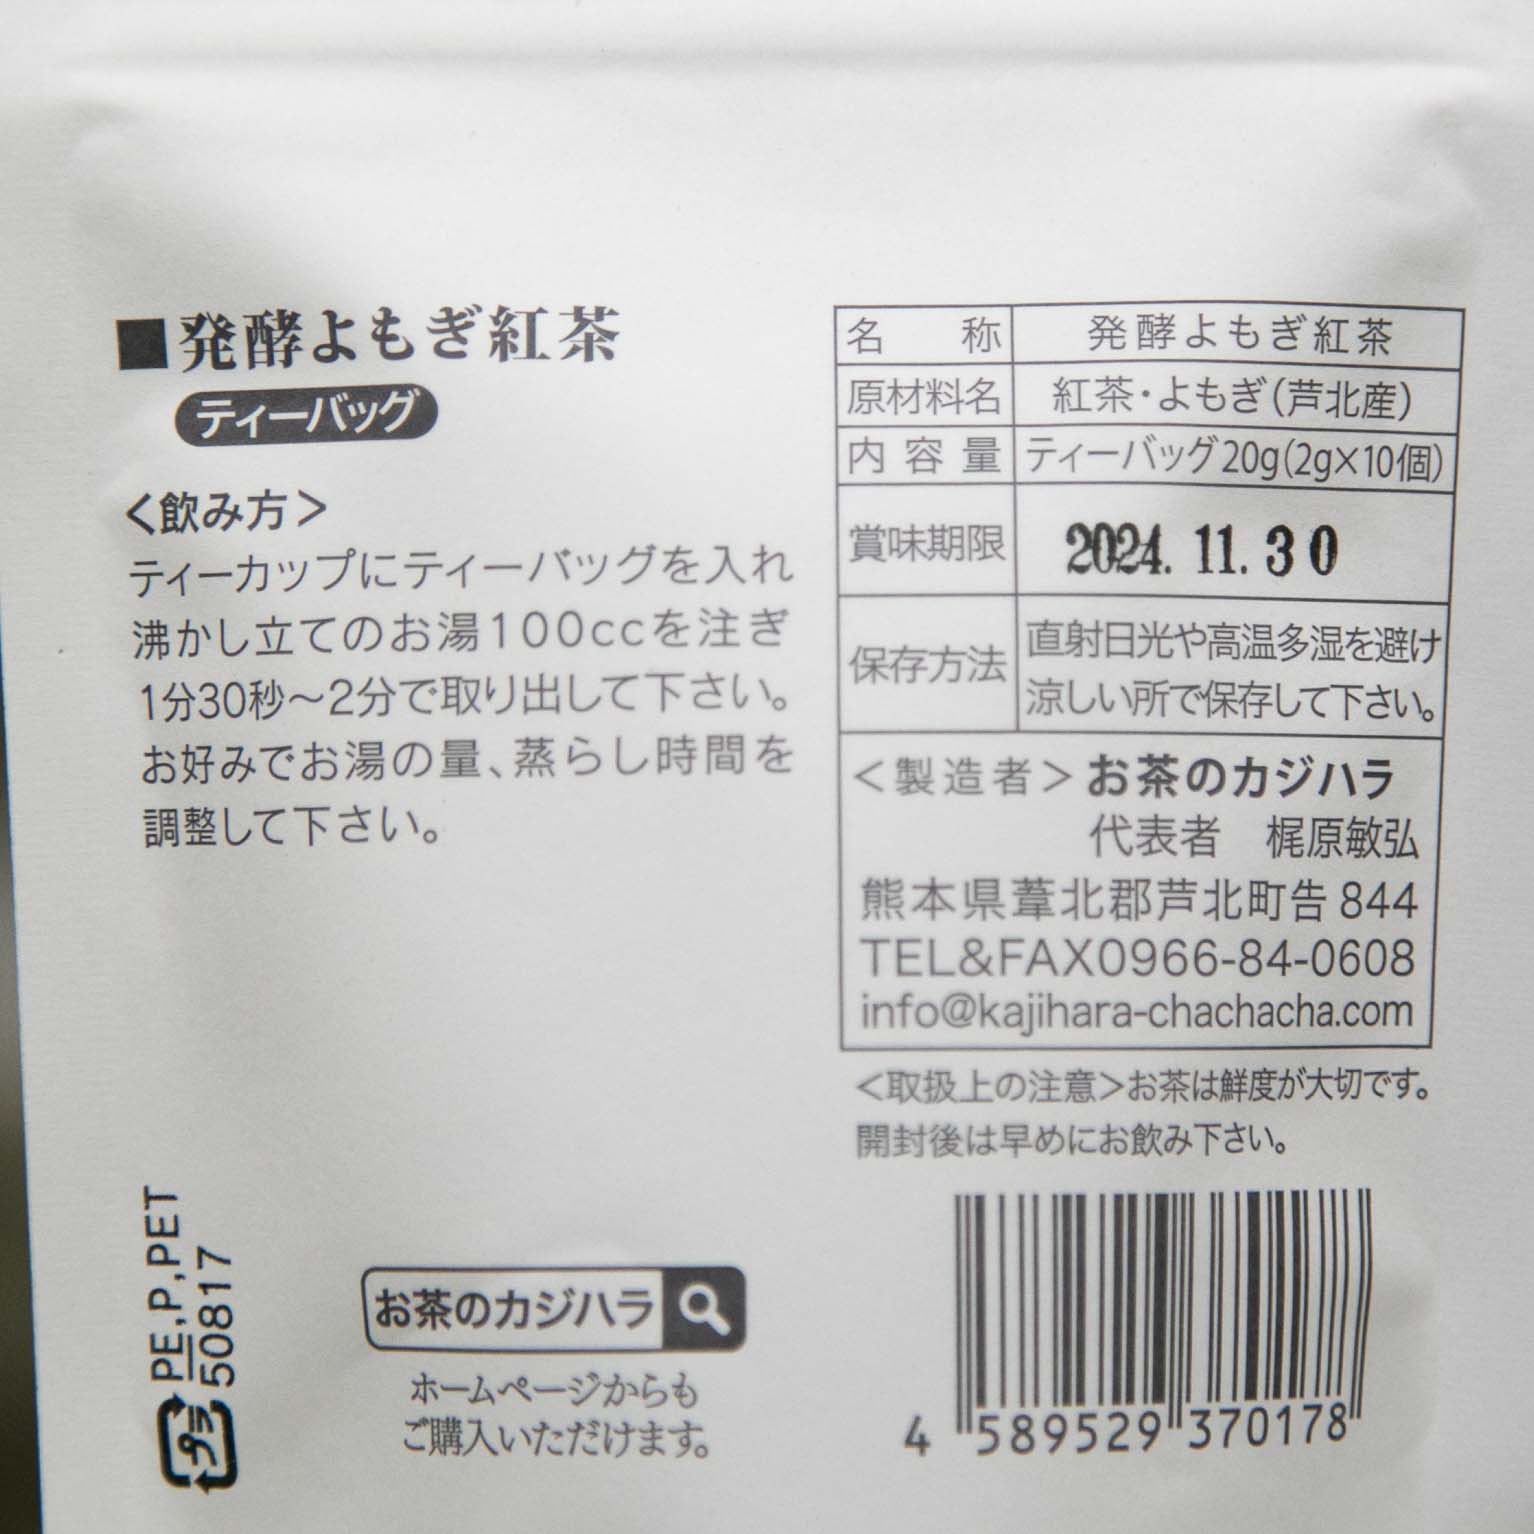 発酵よもぎ紅茶(ティーバッグ) 2